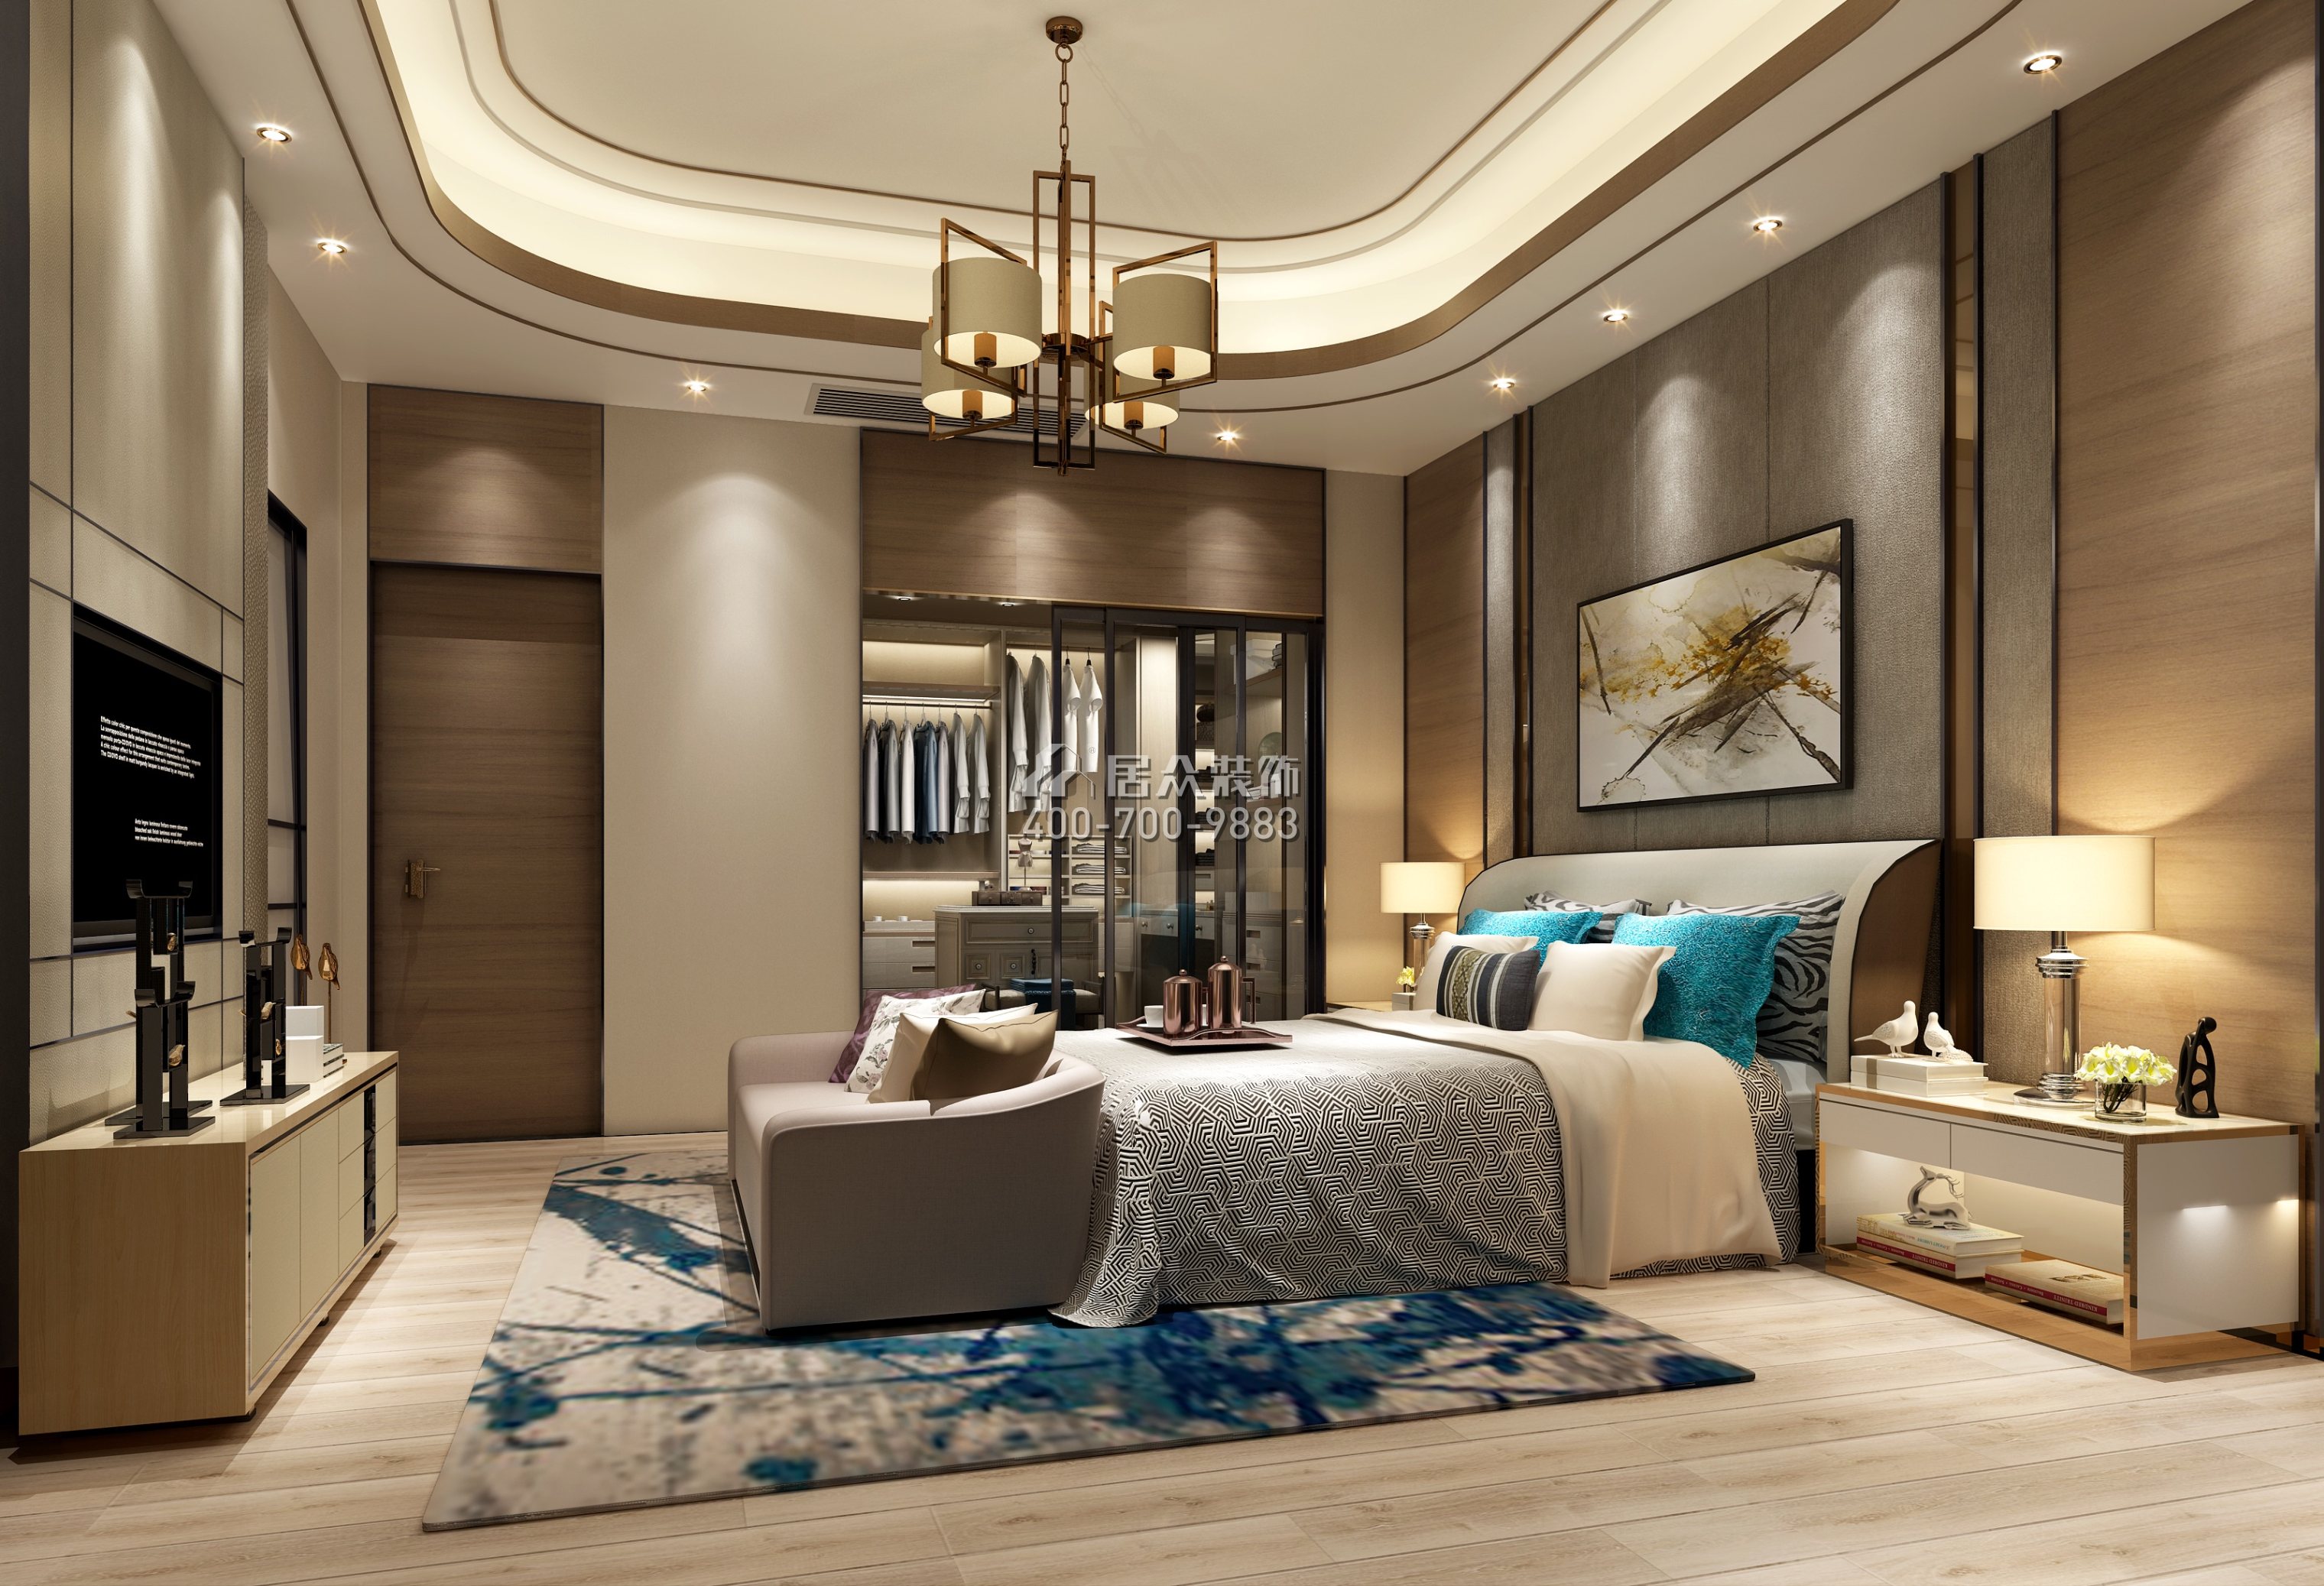 鼎峰尚境600平方米現代簡約風格別墅戶型臥室裝修效果圖